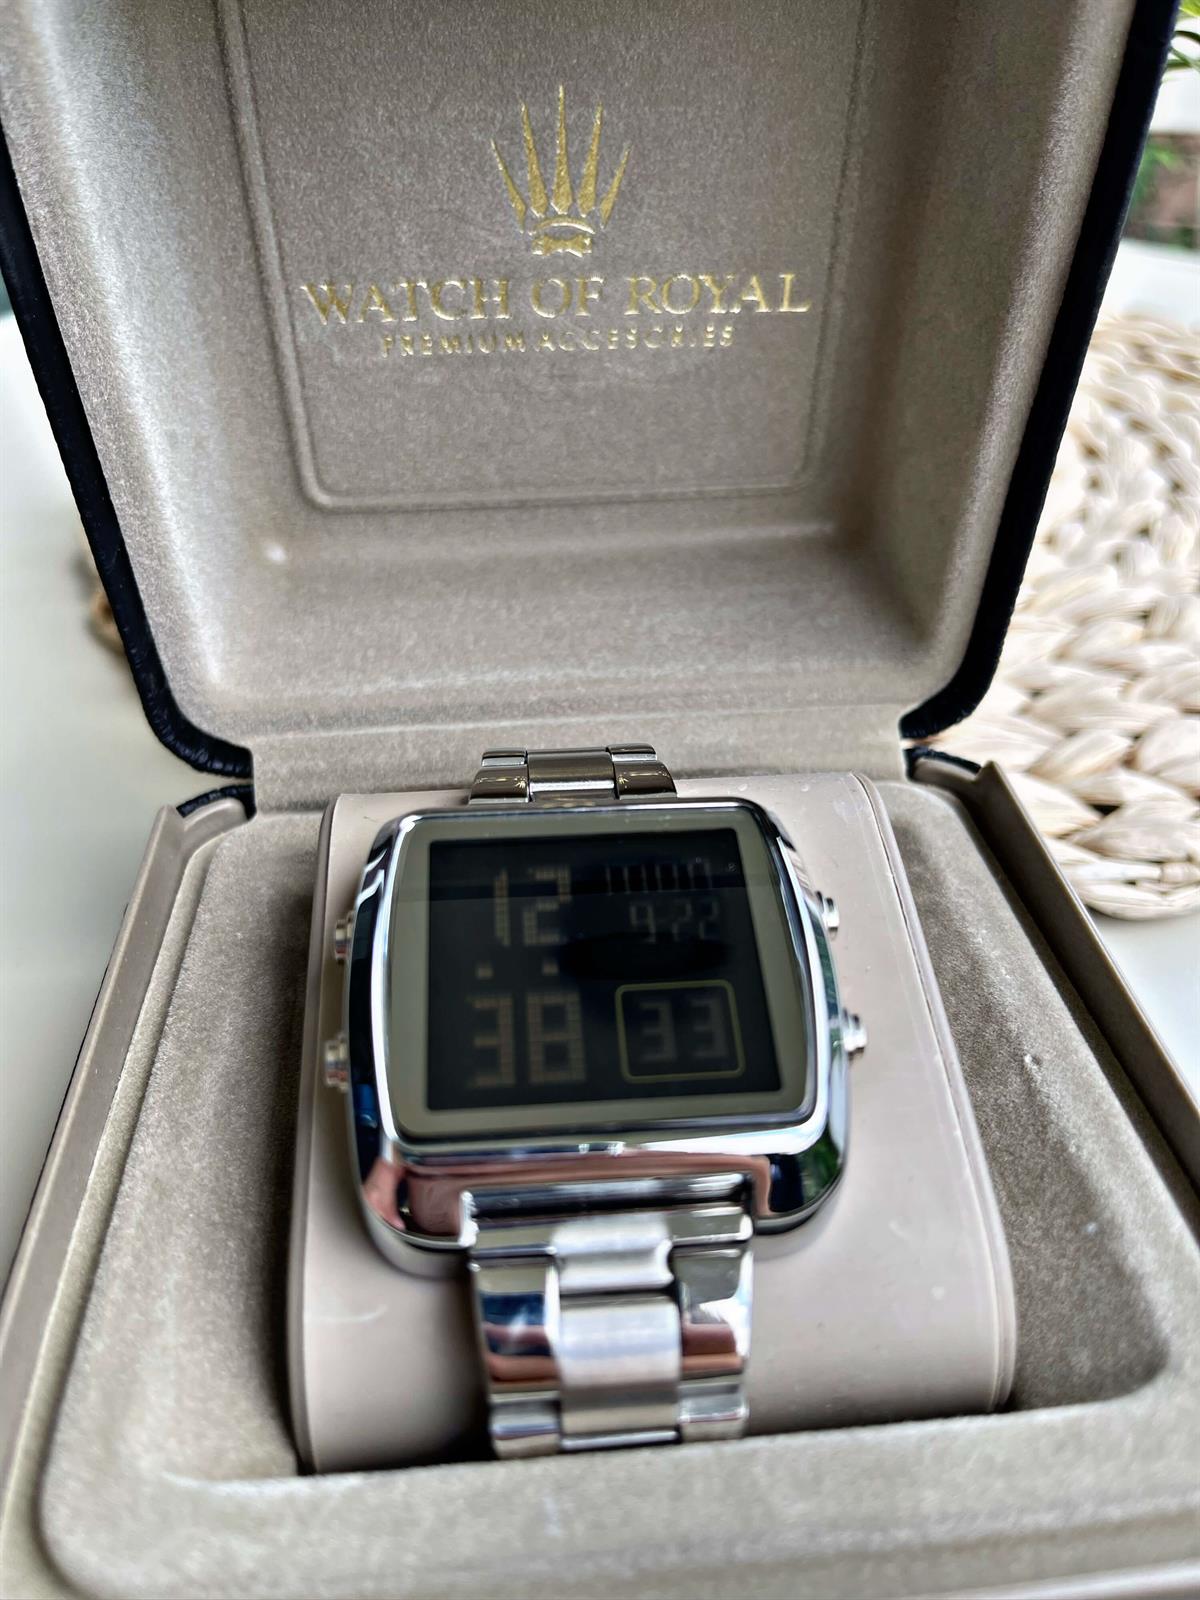 Saat Koleksiyonlarını Keşfet- Zamanı Durdurun| Watch Of Royal